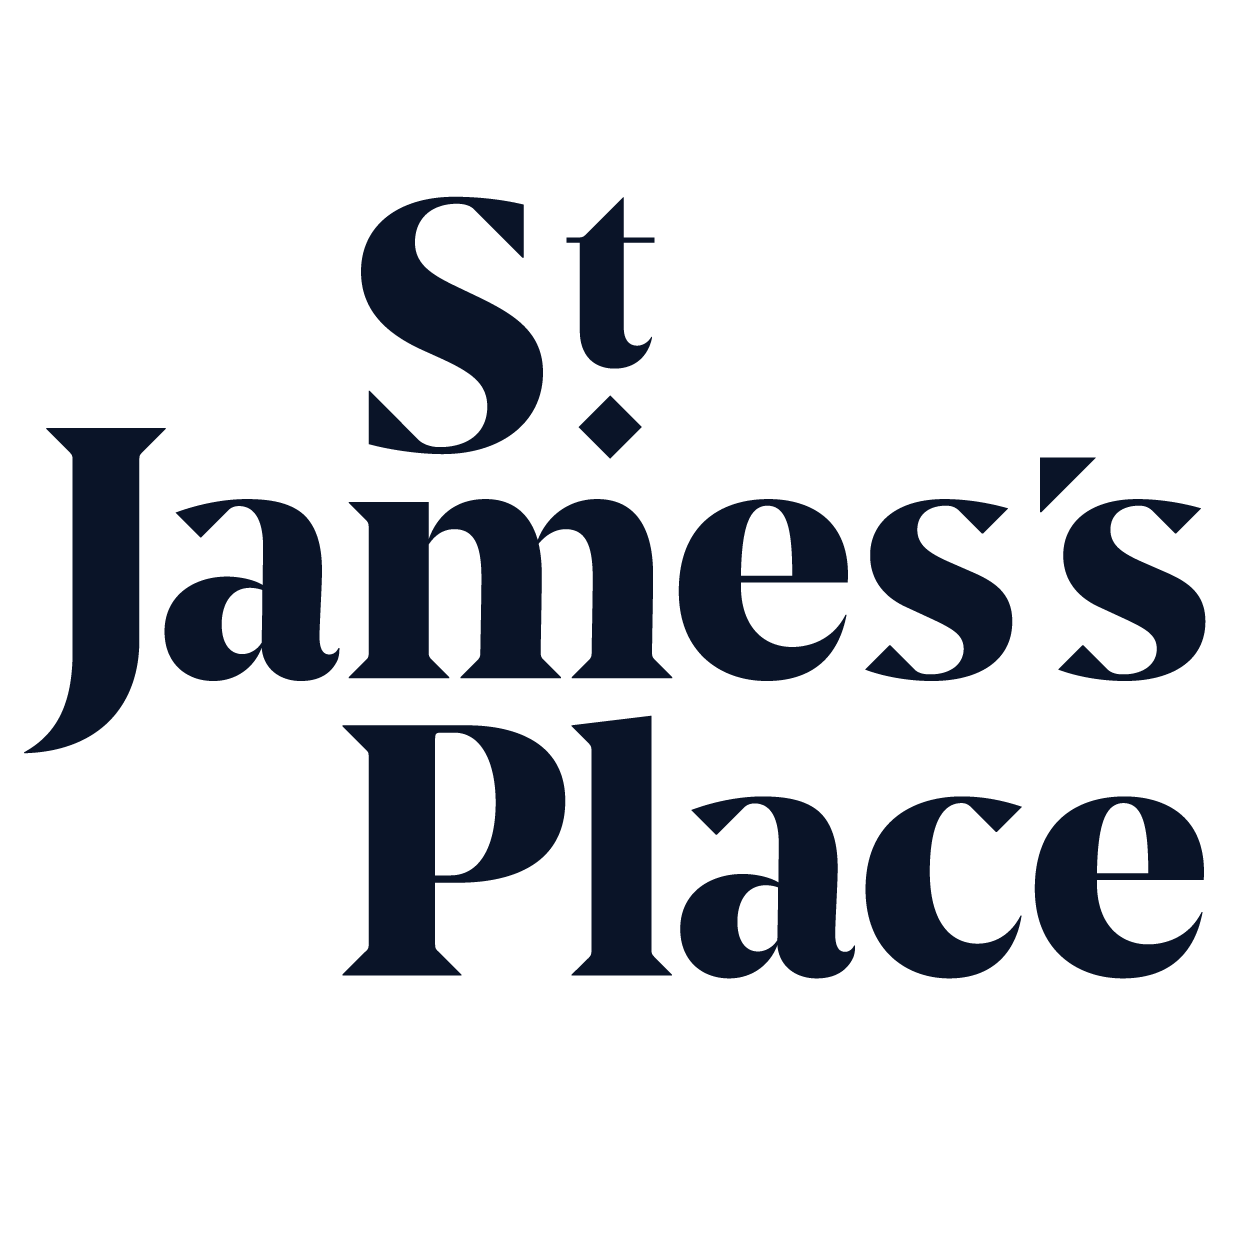 St. James’s Place